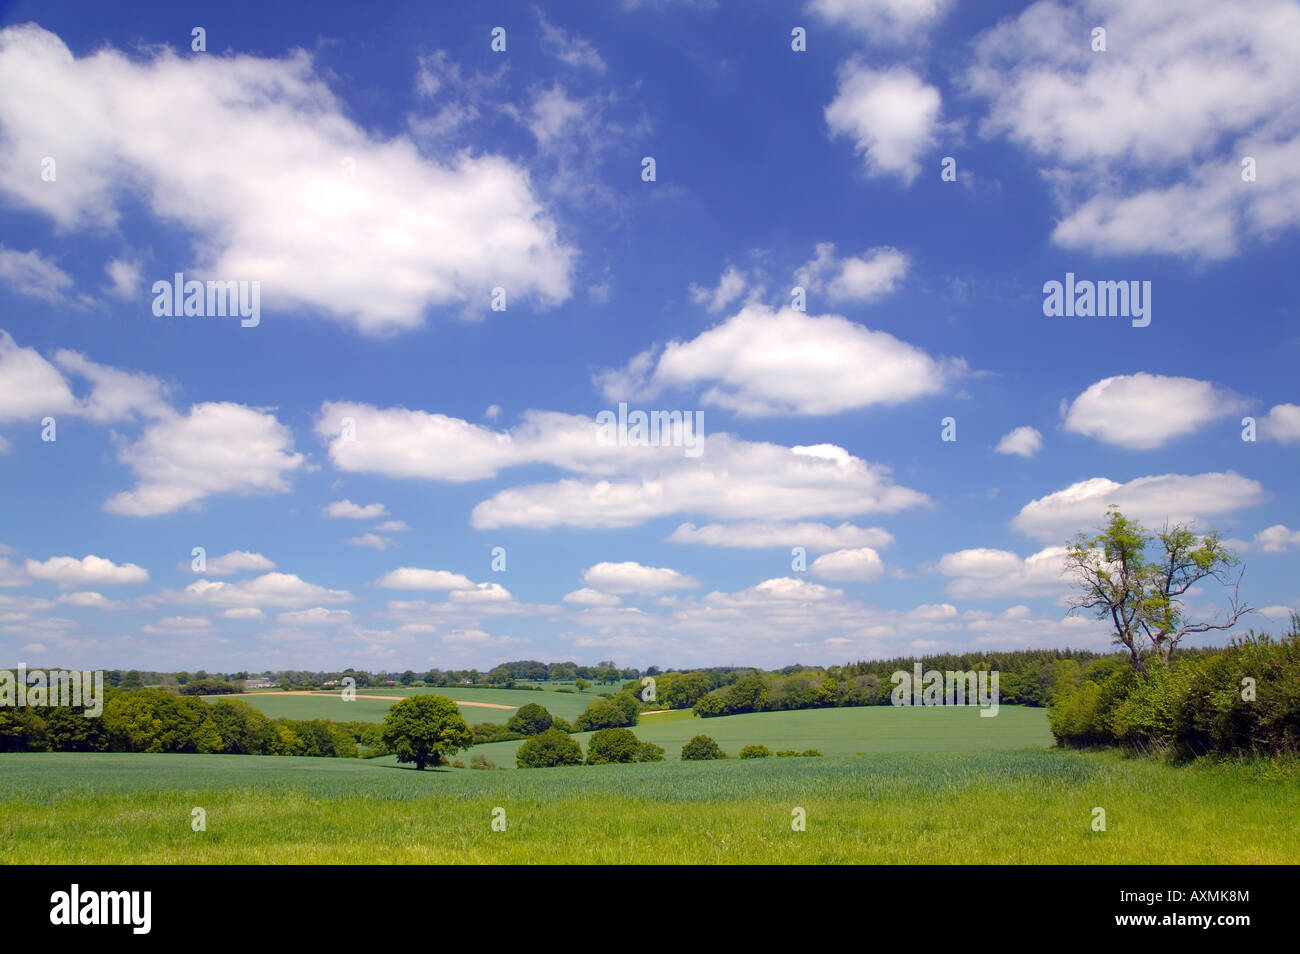 Landschaftsbild von Felder Hügeln Bäumen und einem strahlend blauen bewölkten Himmel Stockfoto